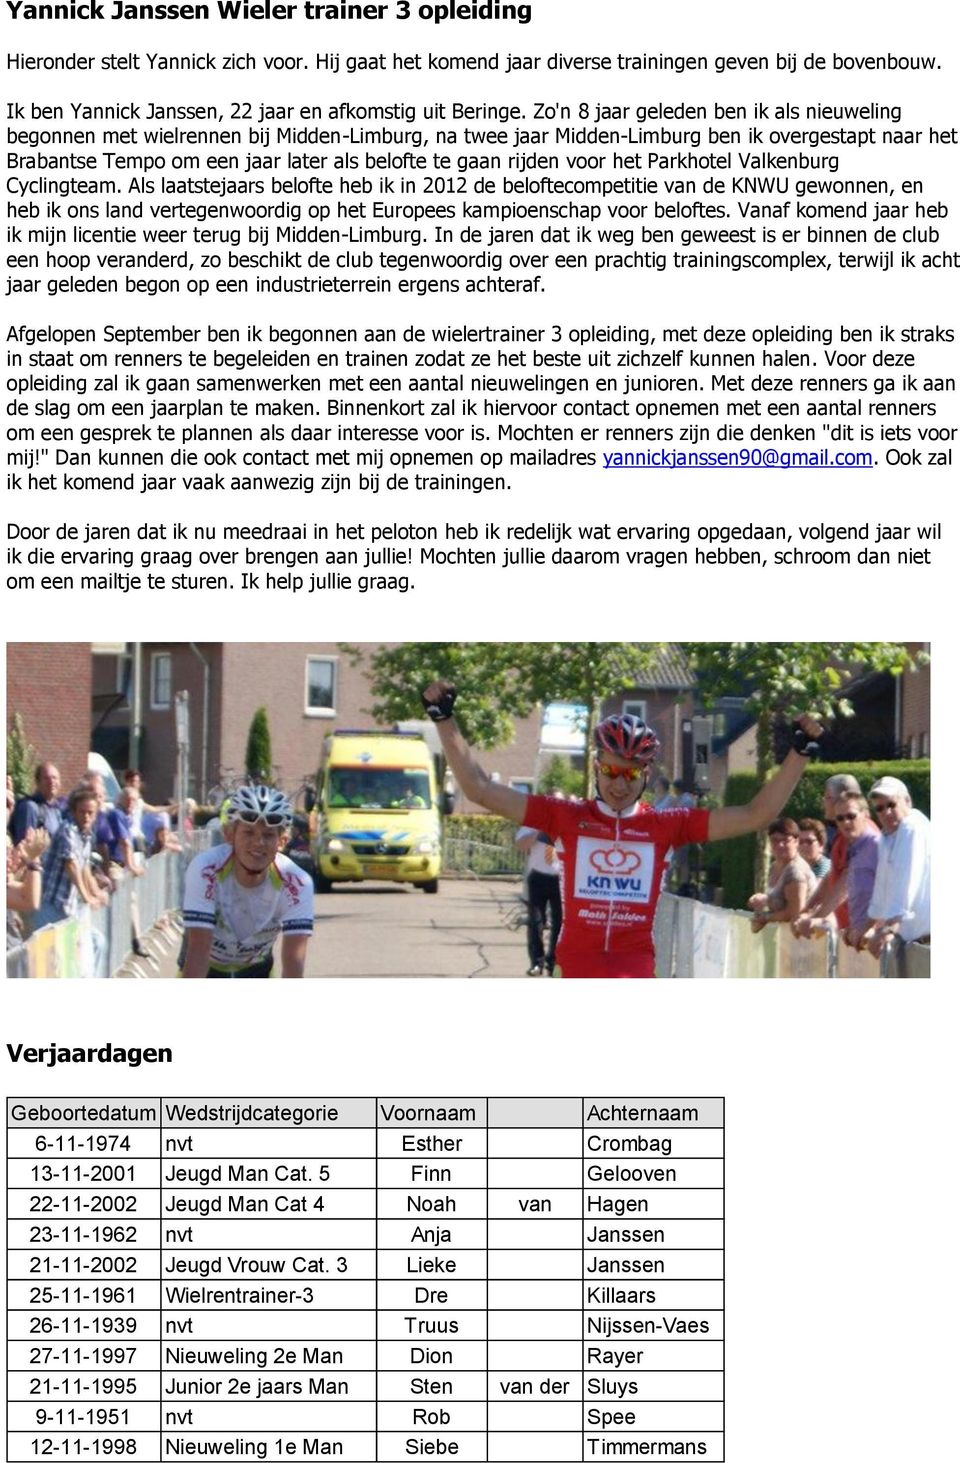 Zo'n 8 jaar geleden ben ik als nieuweling begonnen met wielrennen bij Midden-Limburg, na twee jaar Midden-Limburg ben ik overgestapt naar het Brabantse Tempo om een jaar later als belofte te gaan